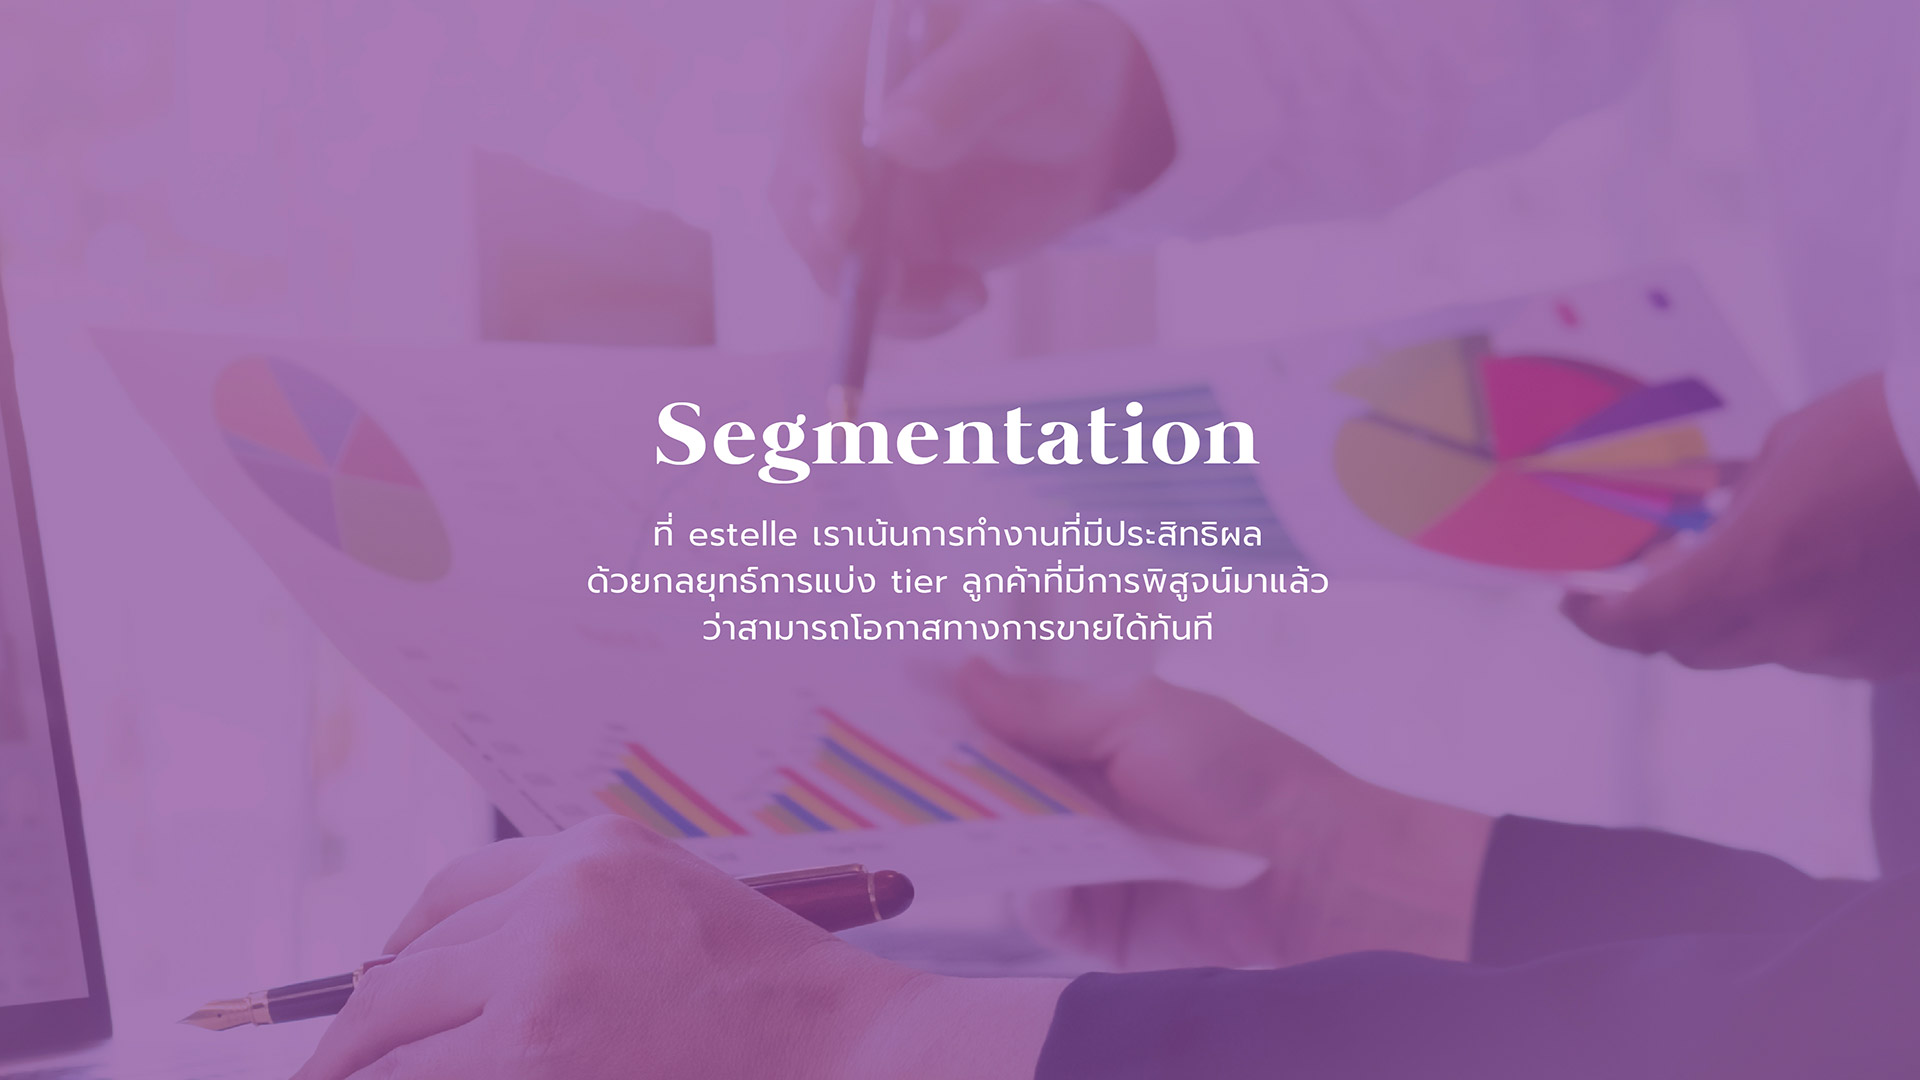 our service - 2.segmentation